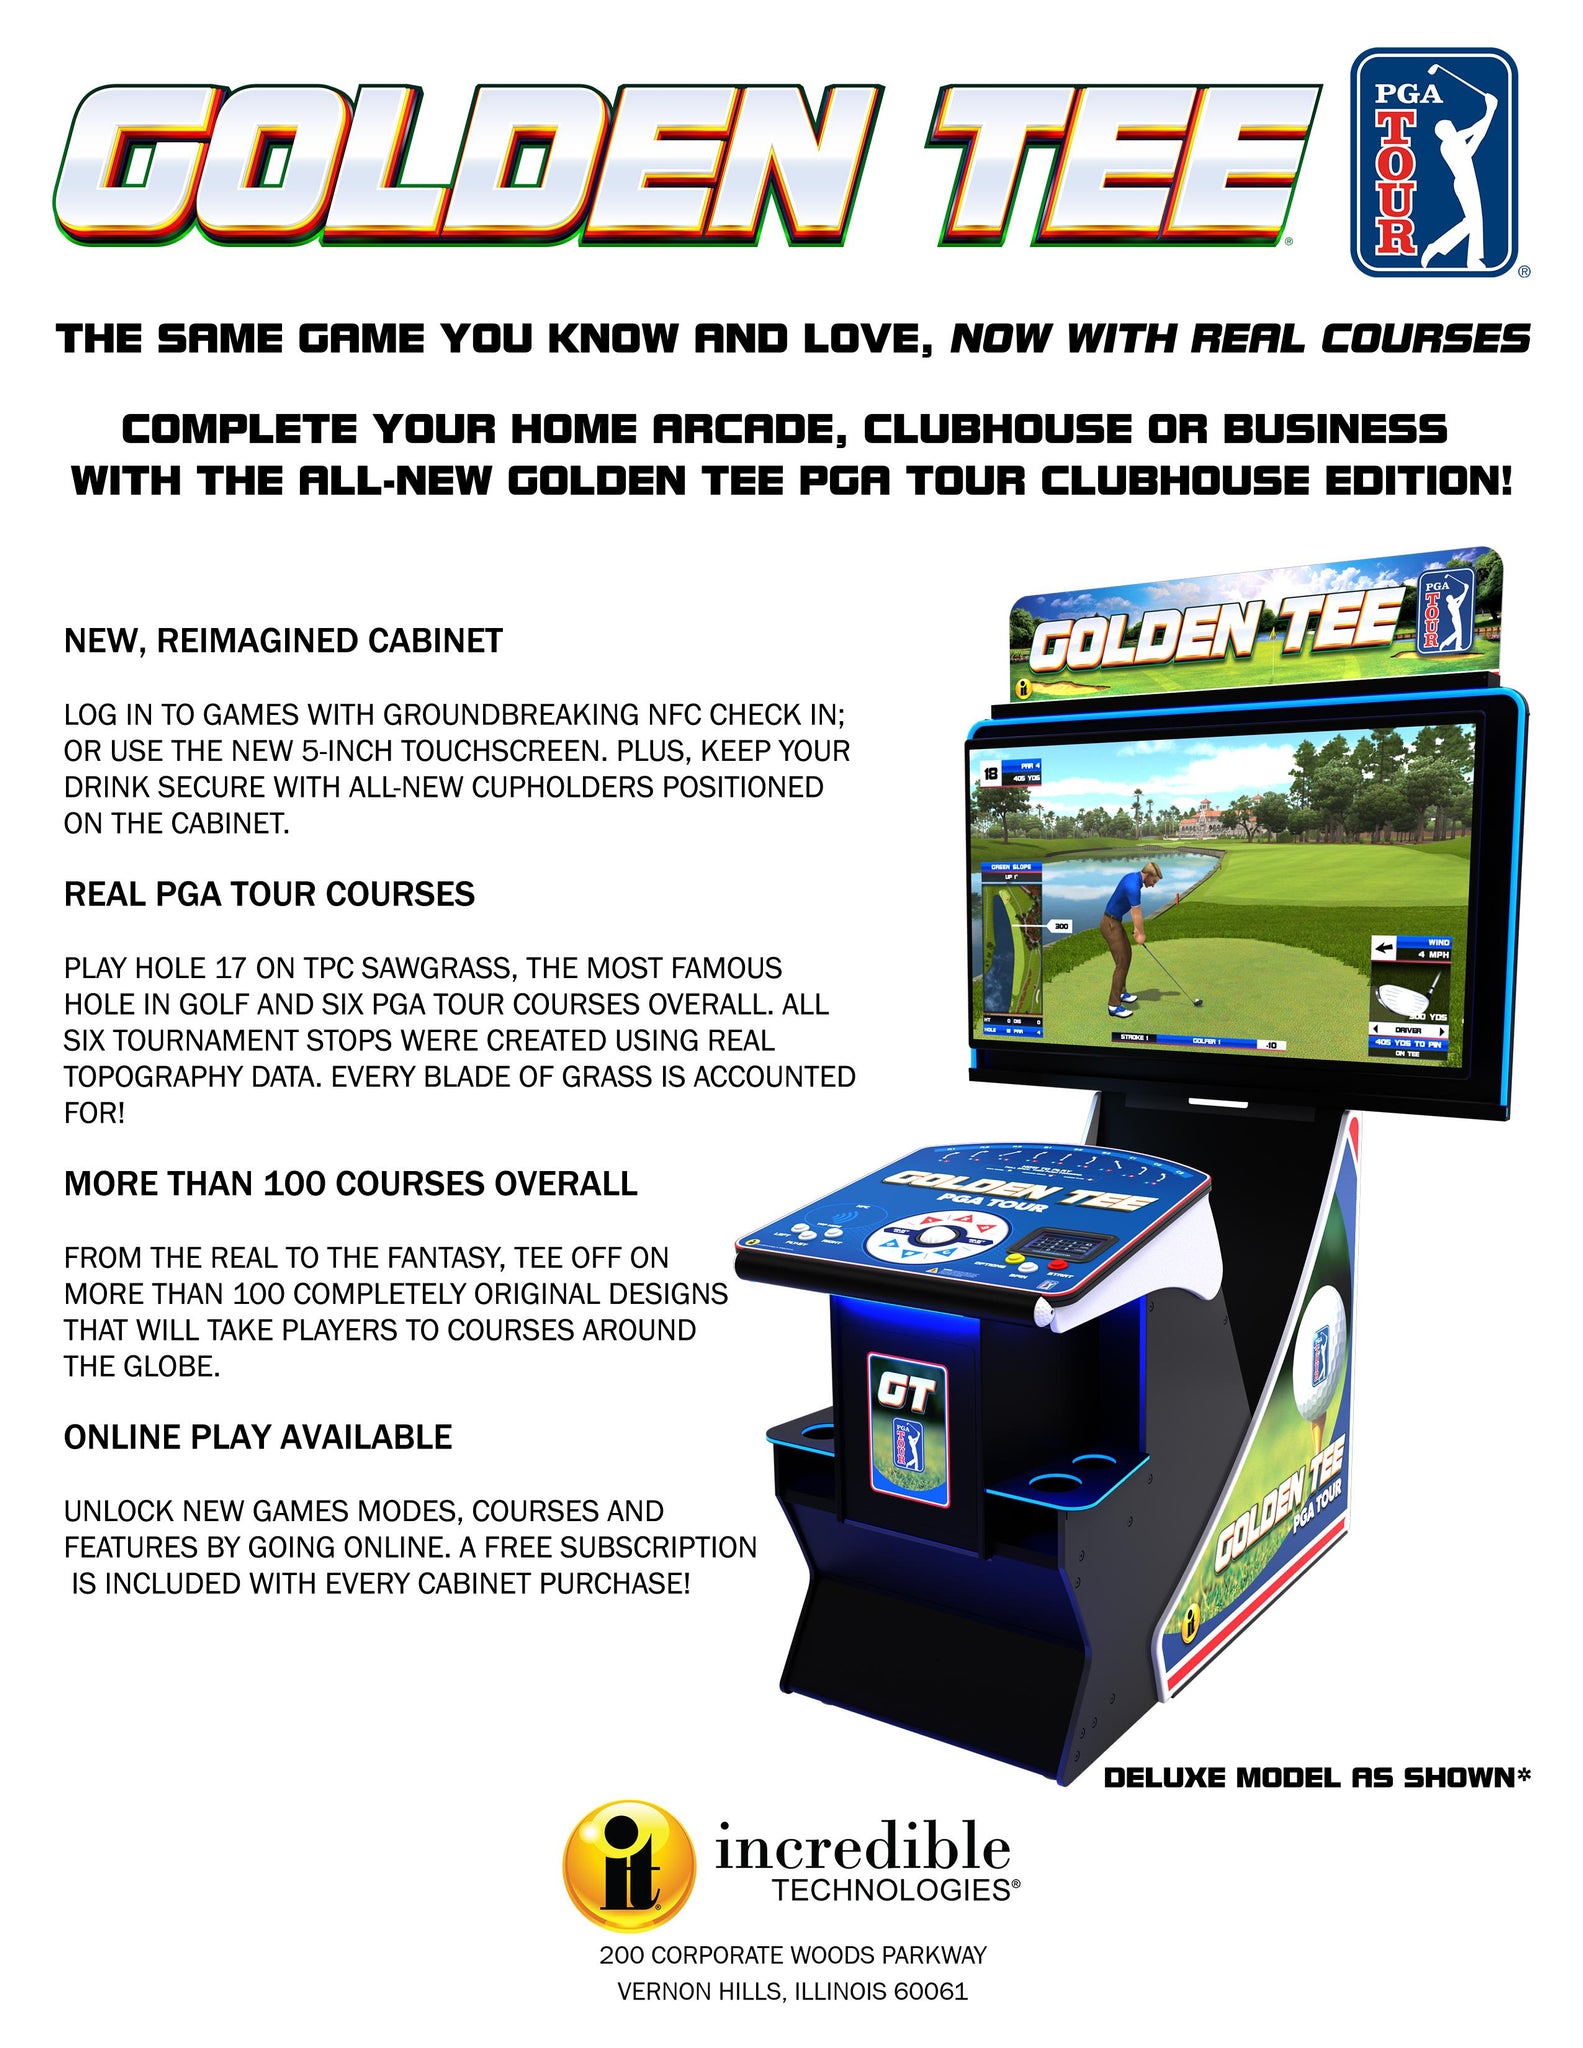 Golden Tee GO Portable Golf Game Coming Soon